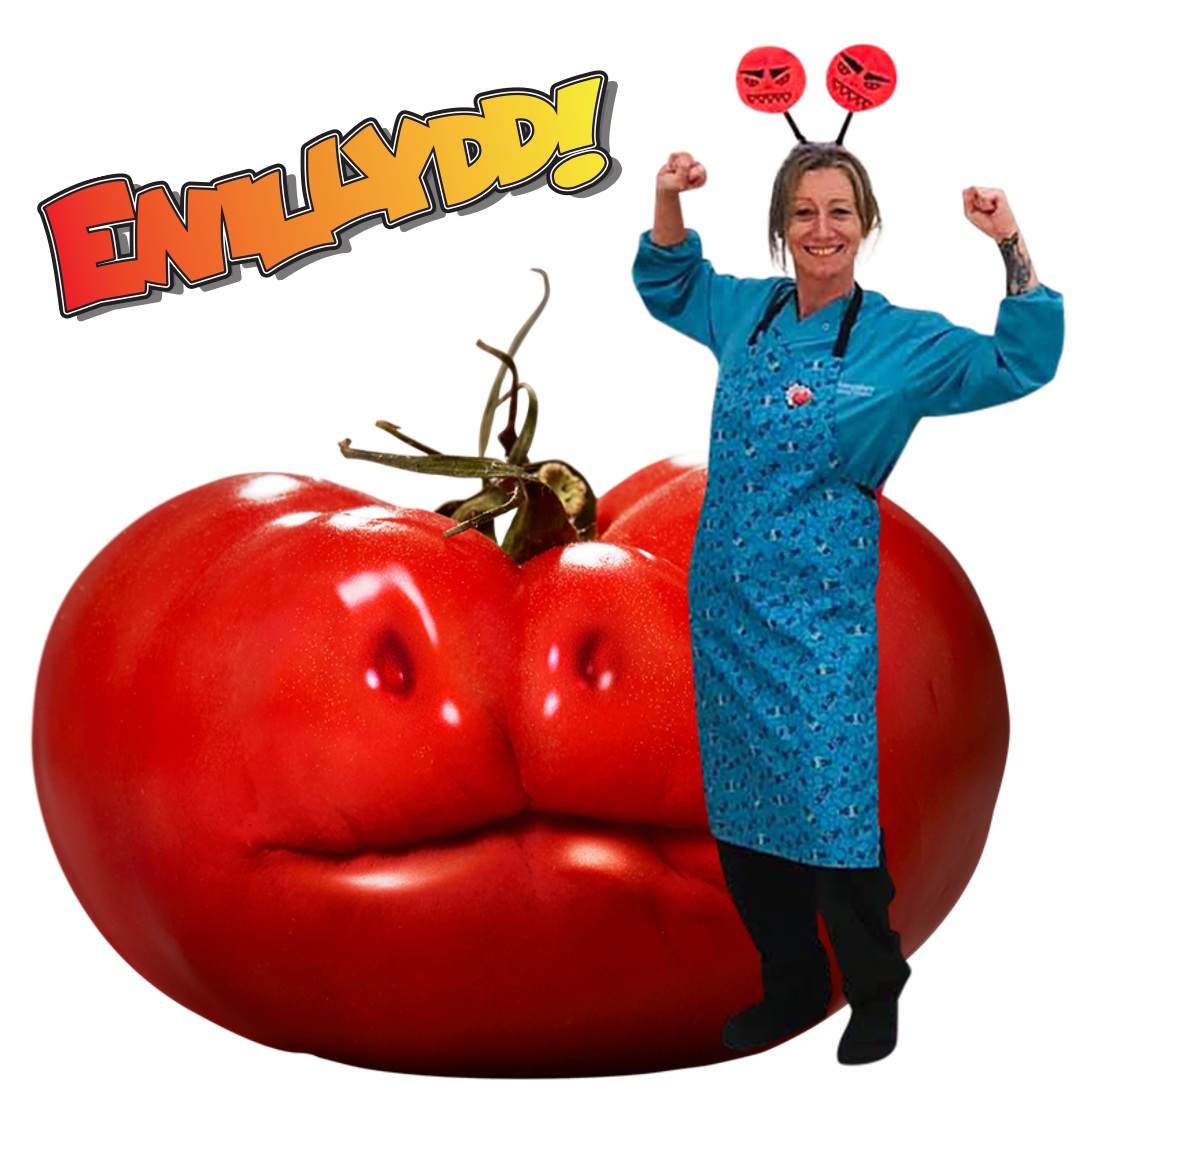 Karen-tomato-welsh